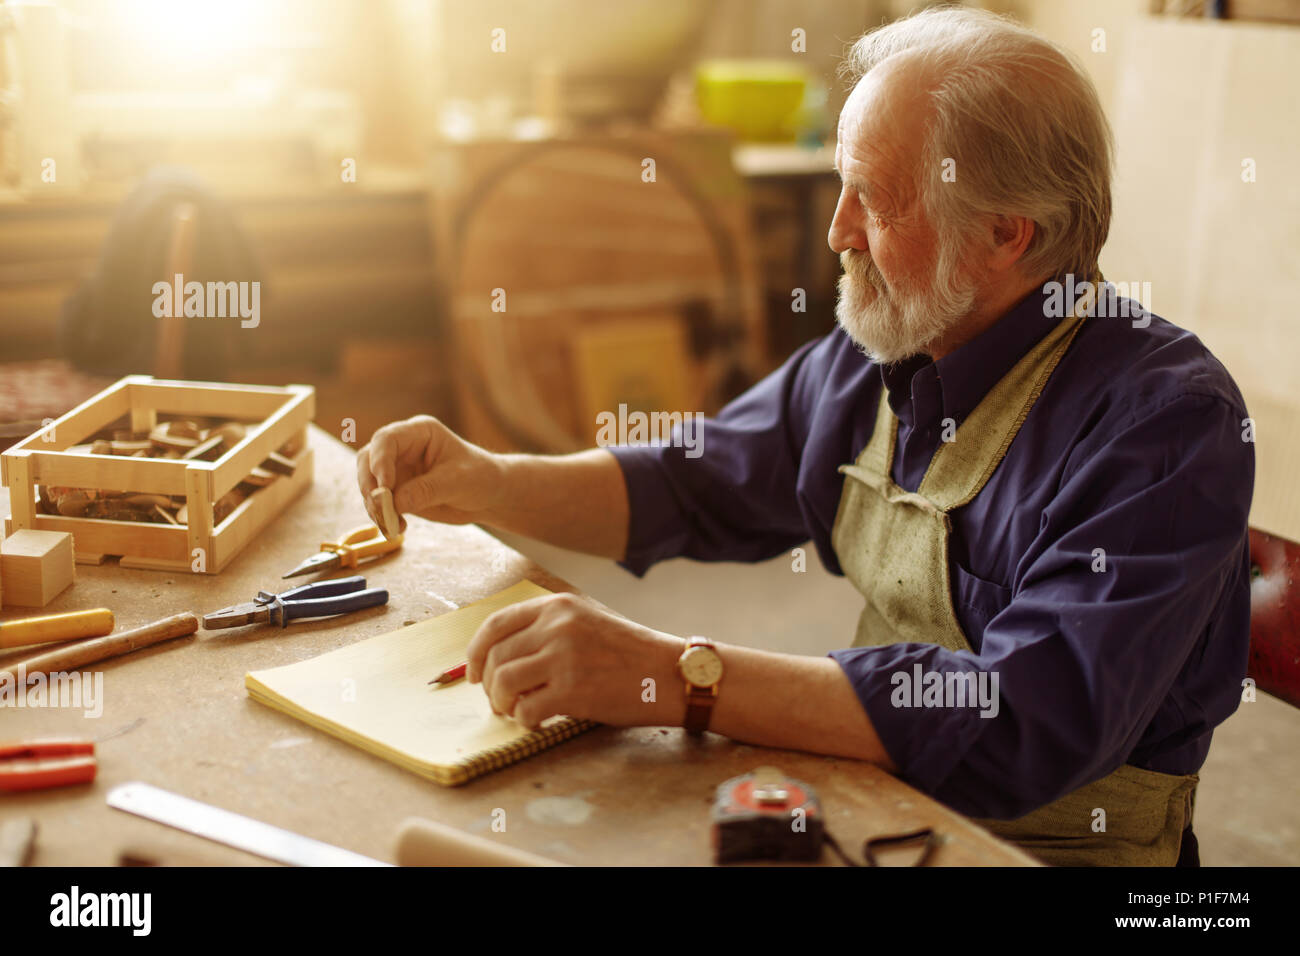 Alter Mann mit grauen Haaren, Souvenir aus Querschnitt von Baum zu machen Stockfoto